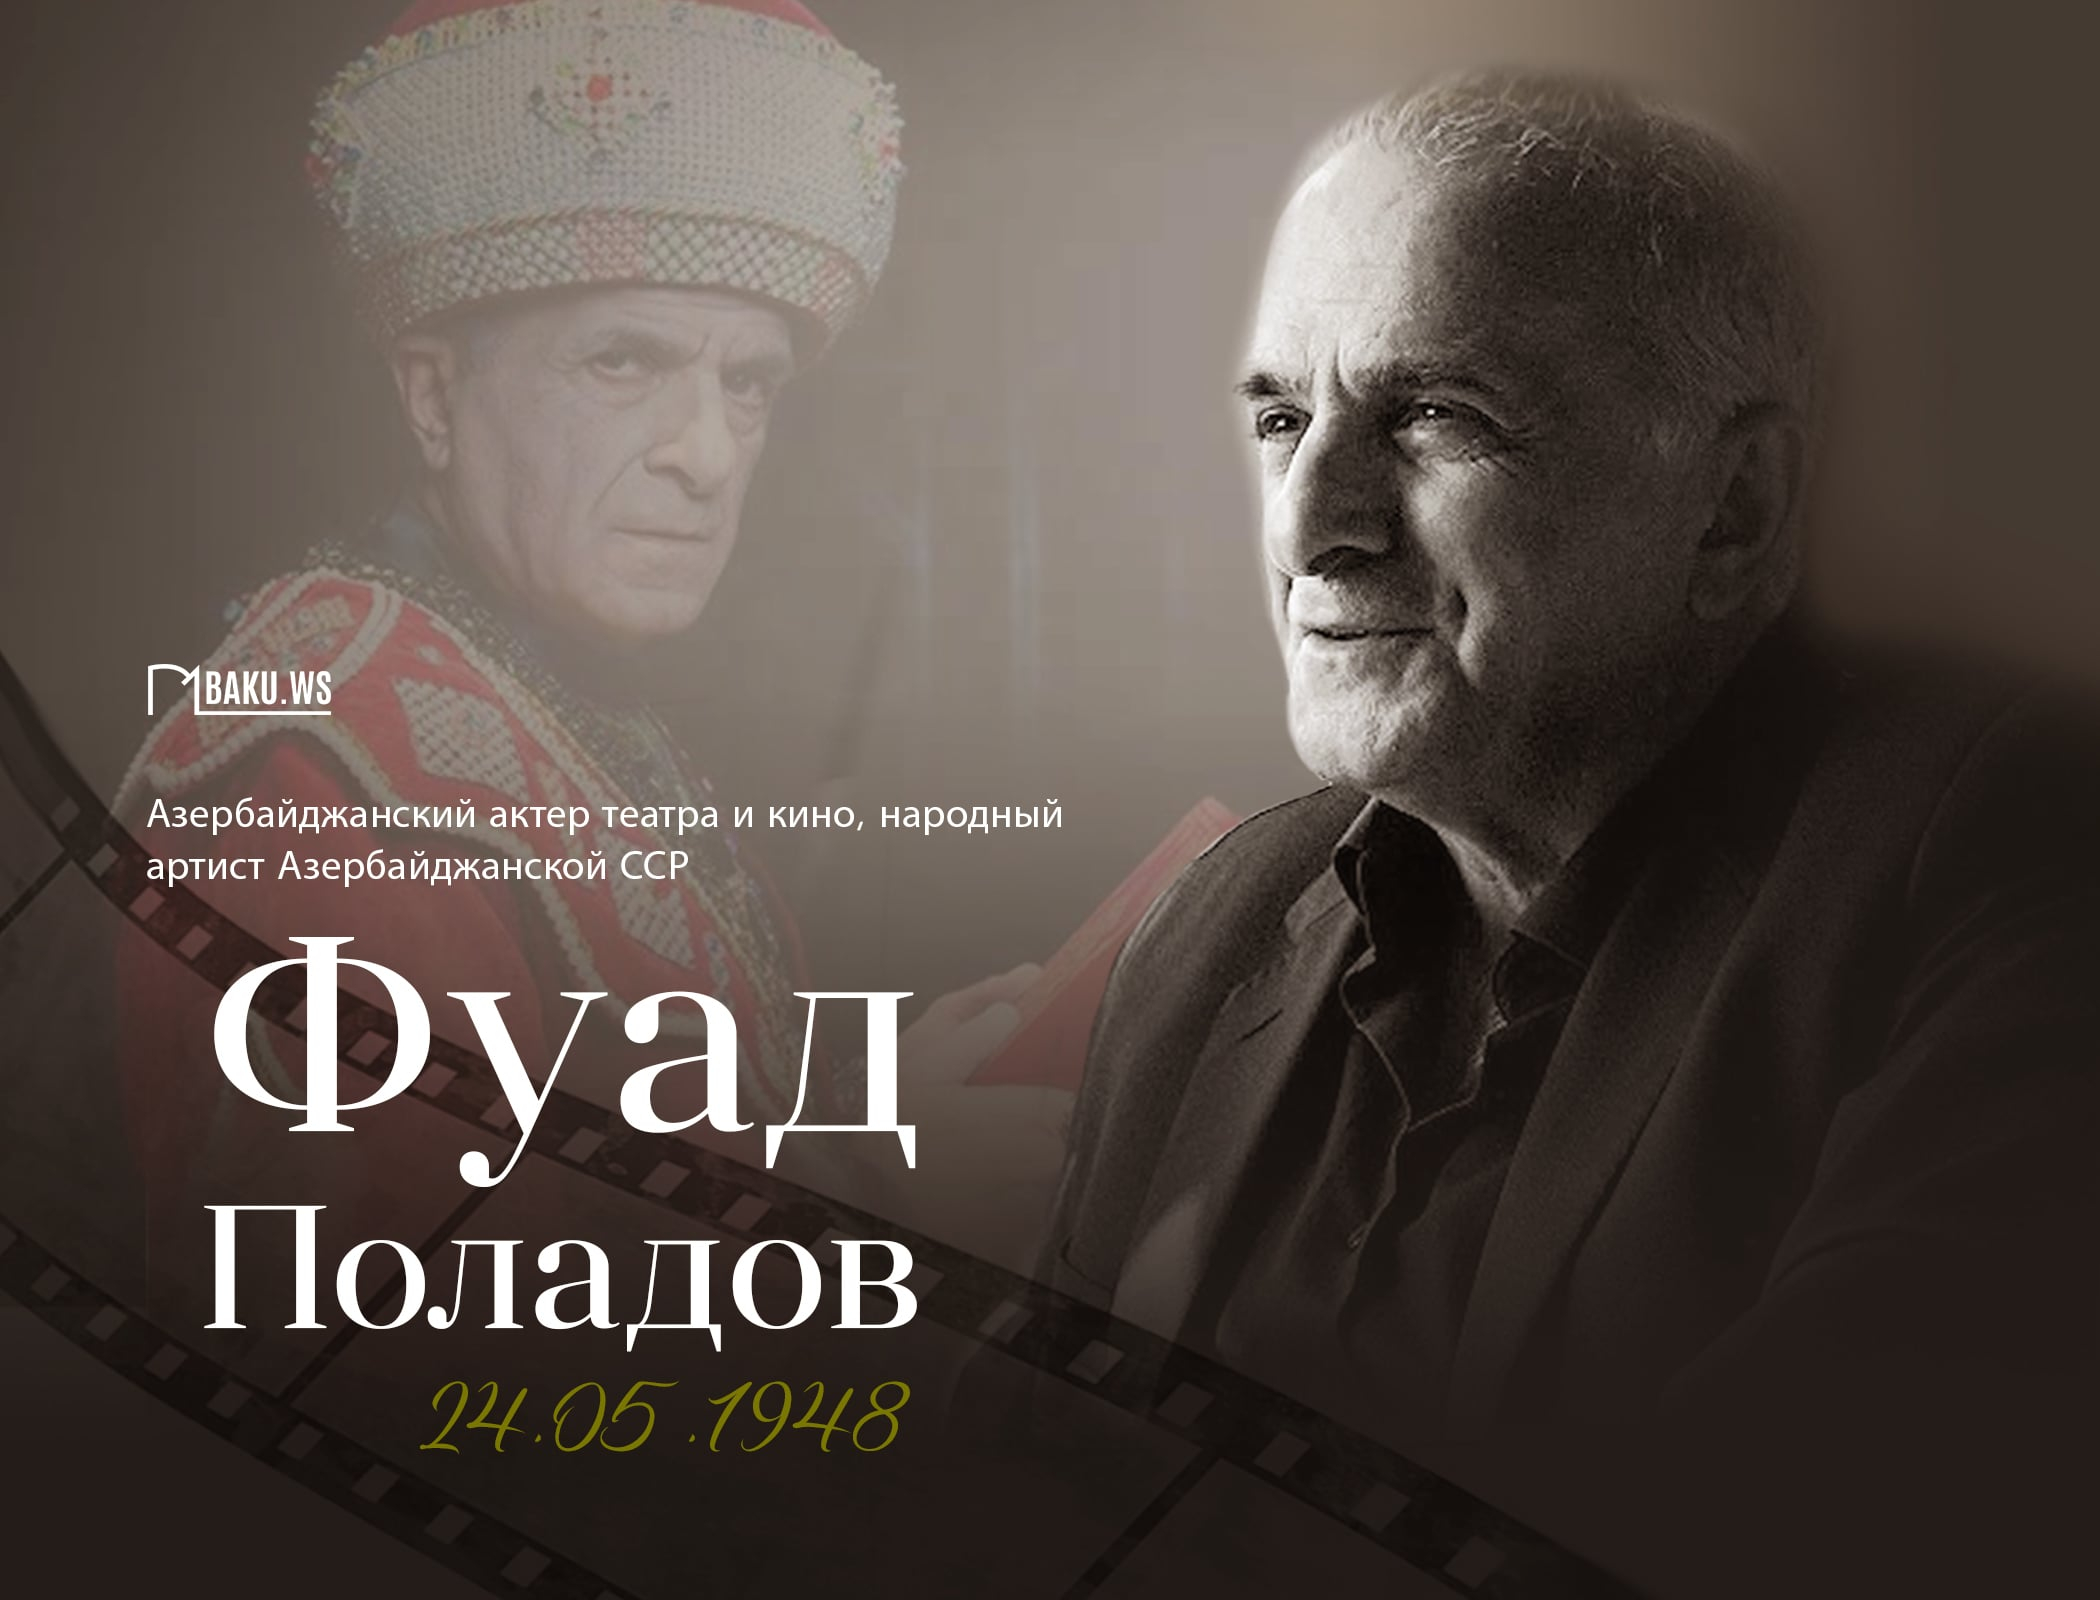 Сегодня исполняется 76 лет со дня рождения народного артиста Фуада Поладова